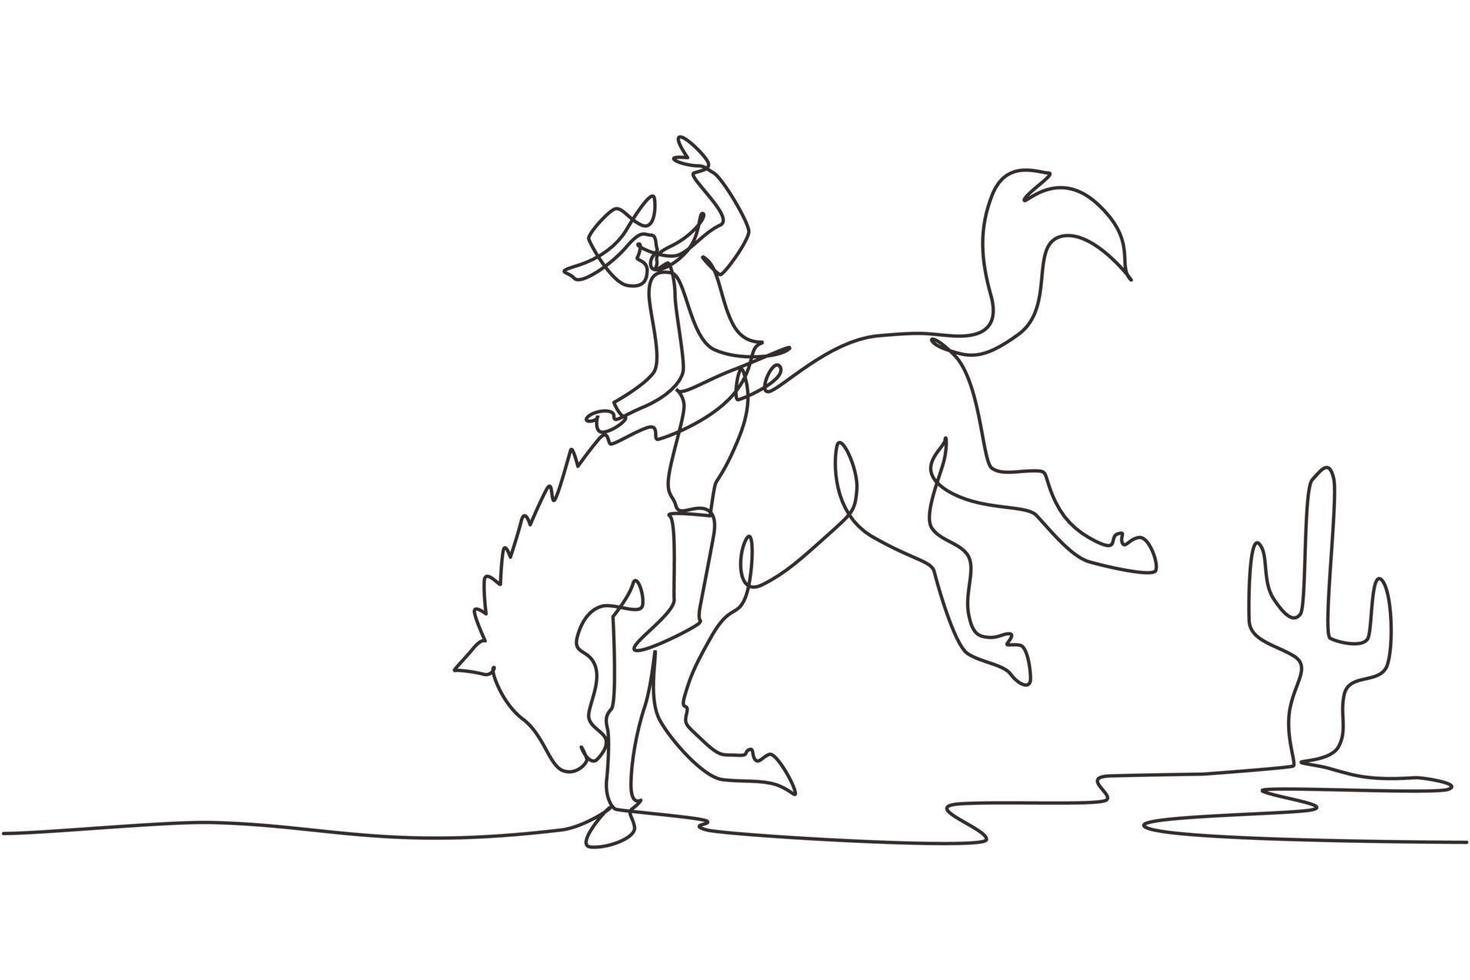 cowboy di disegno a linea continua singola su cavallo selvaggio mustang. cowboy del rodeo che monta cavallo selvaggio sul segno di legno. cowboy in sella a una corsa di cavalli selvaggi. illustrazione vettoriale di disegno grafico dinamico di una linea